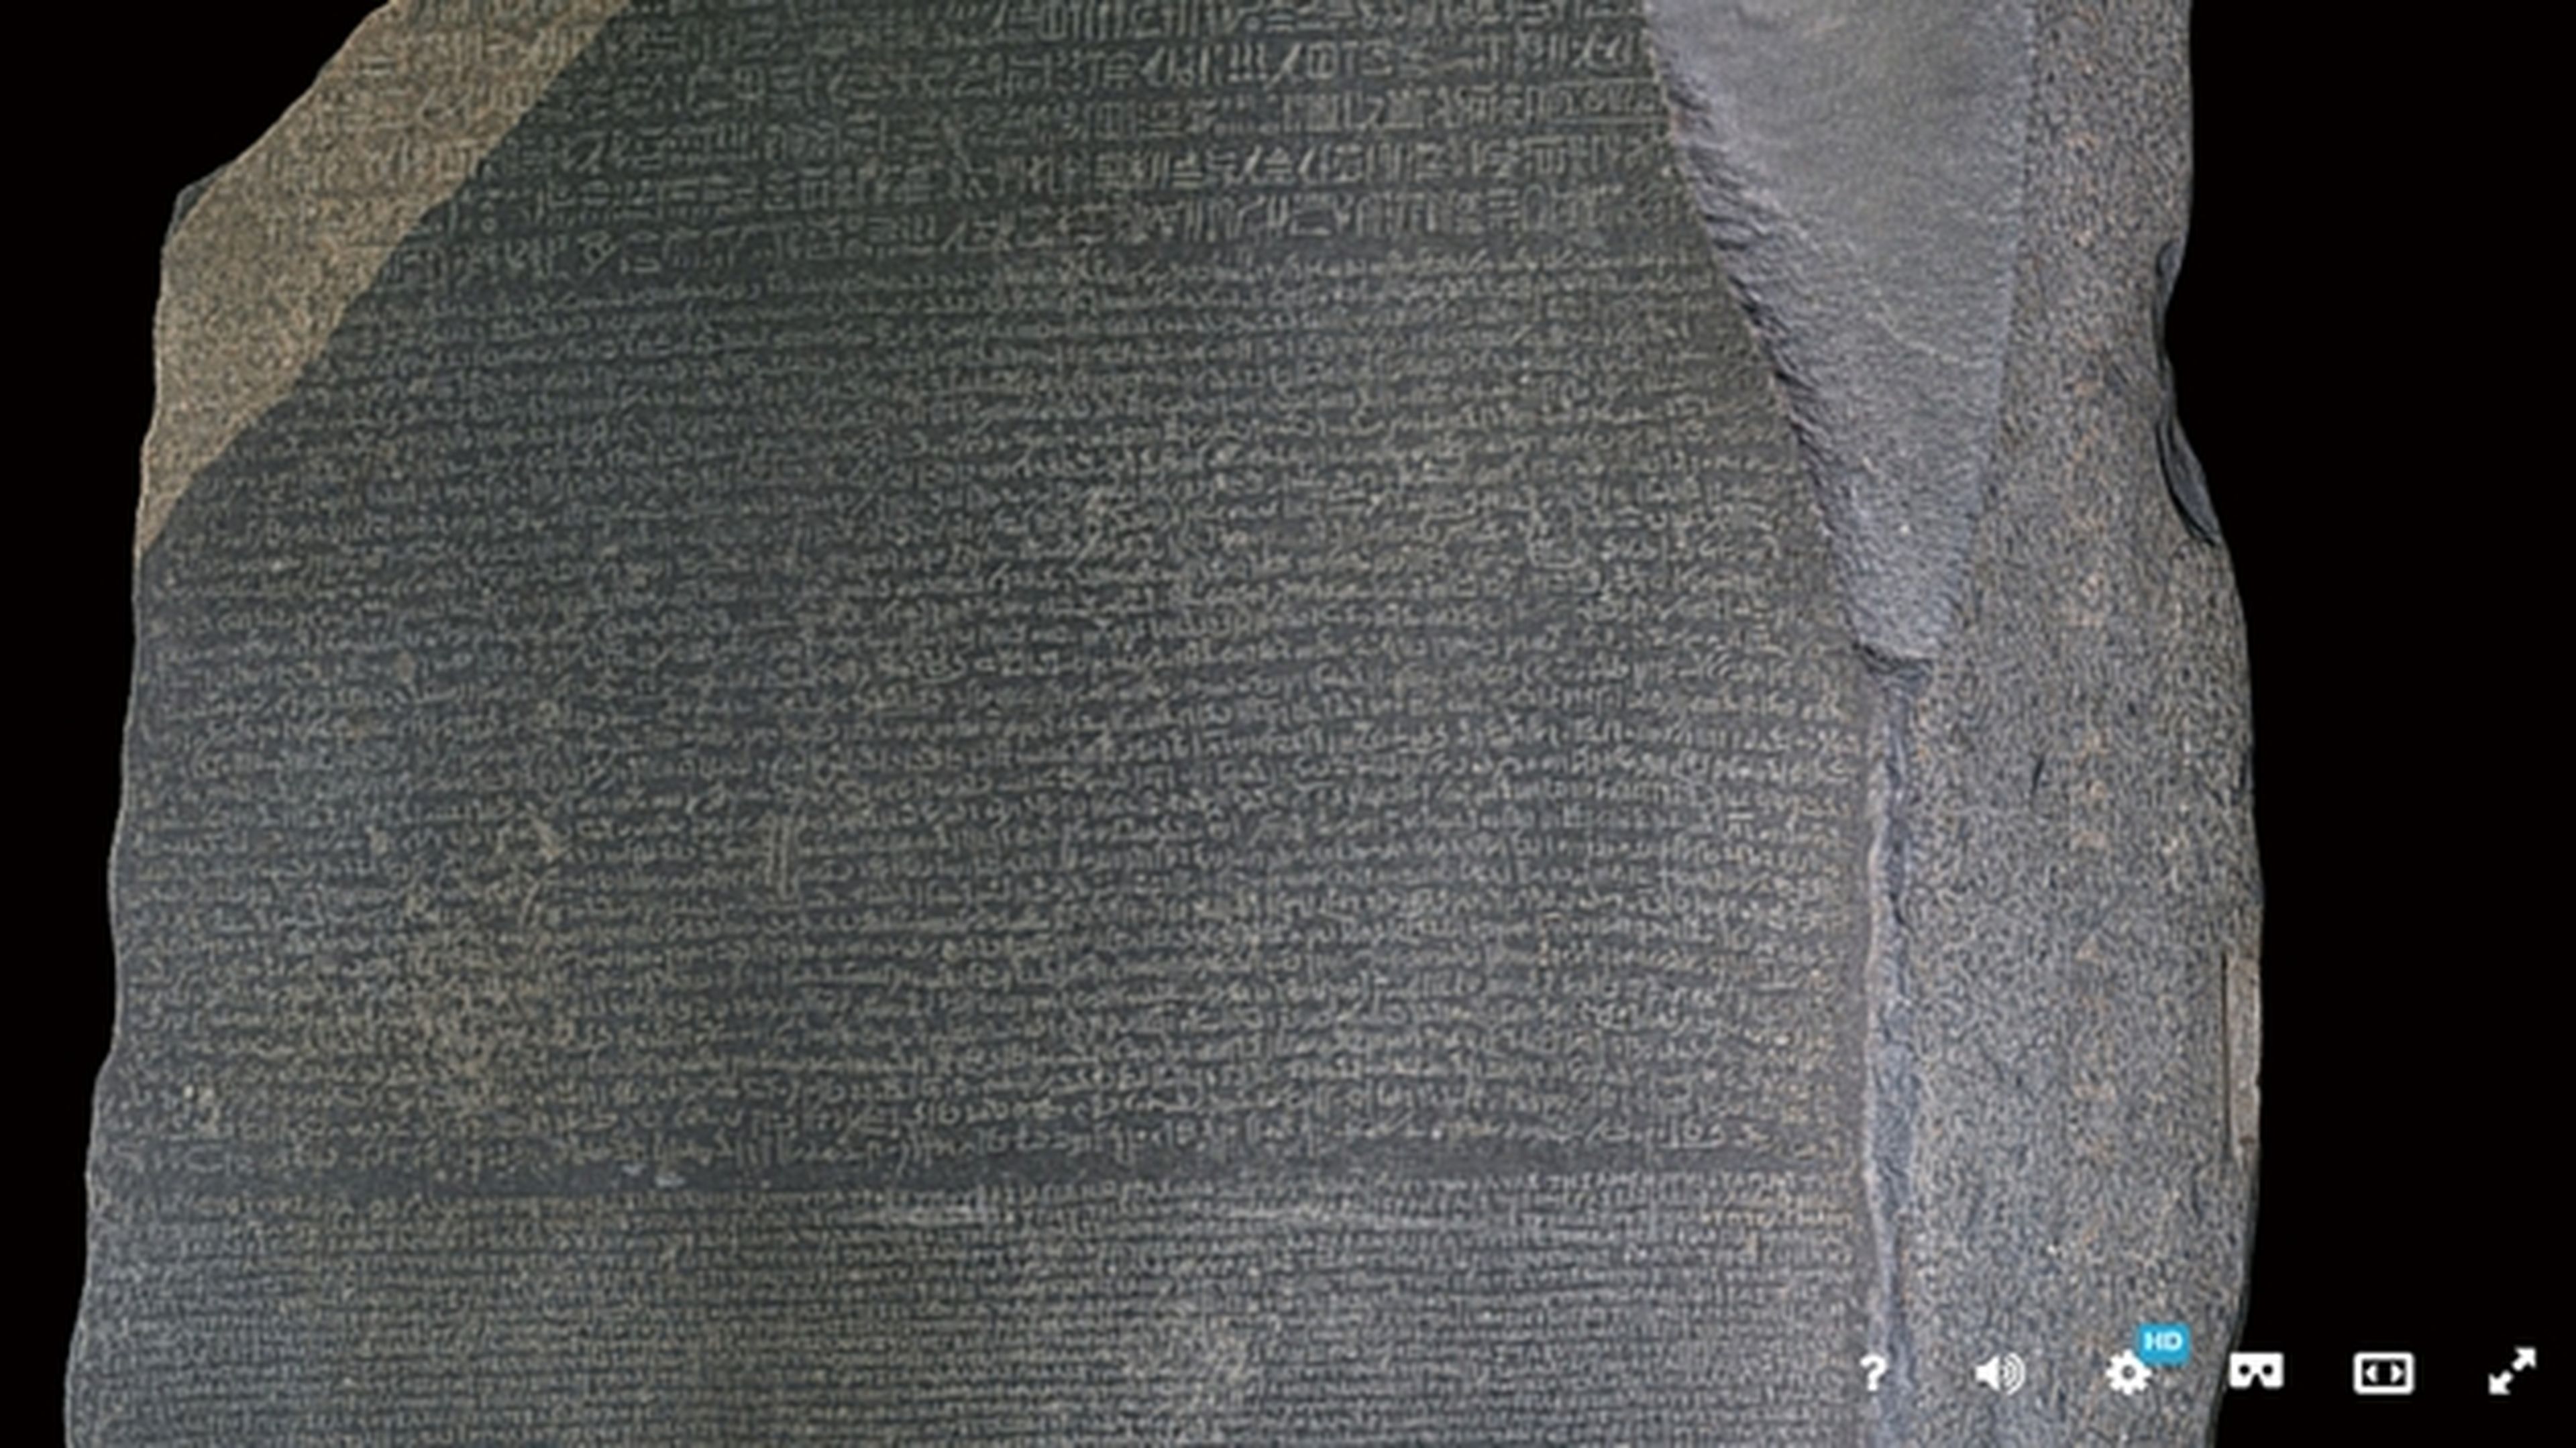 Explora en 3D la Piedra de Rosetta que tradujo los jeroglíficos